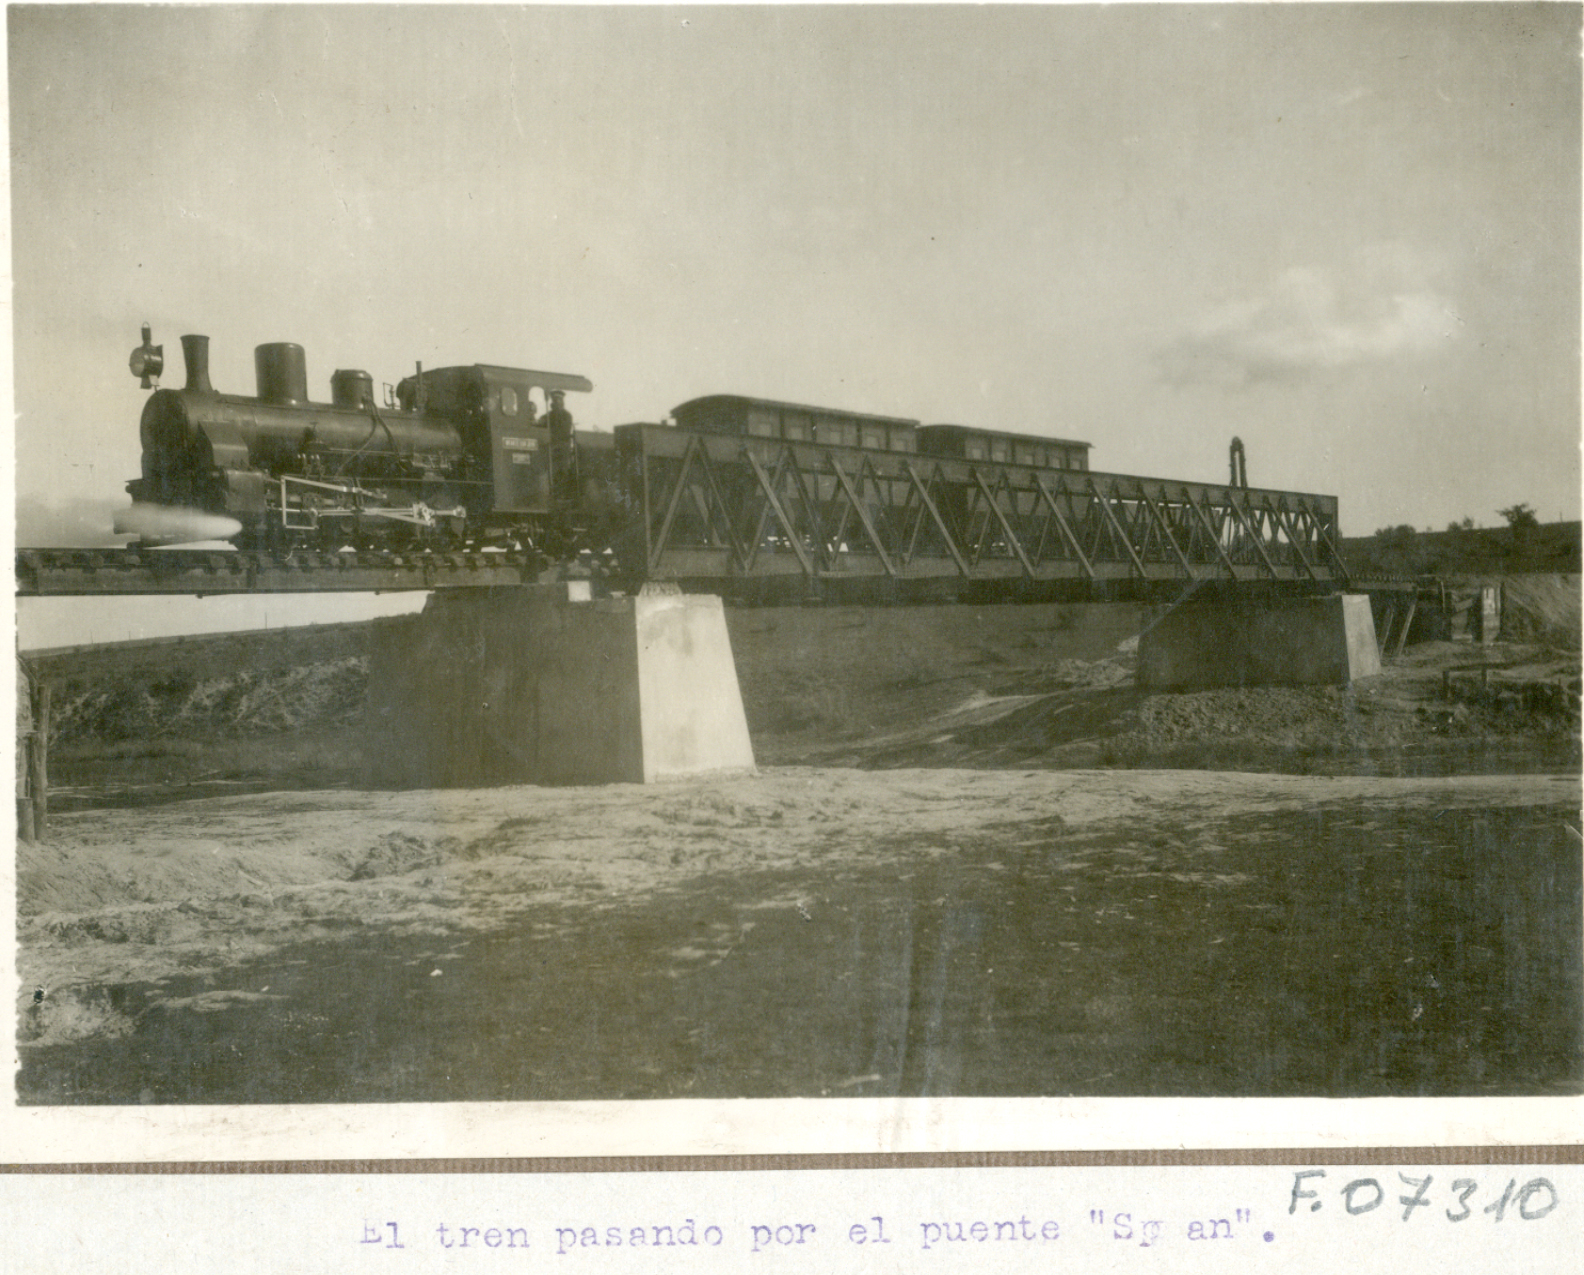 Tren pasando por el puente Span. Demostración experimental por el cuerpo de ingenieros con la presencia  Alfonso XIII. 1922-1923